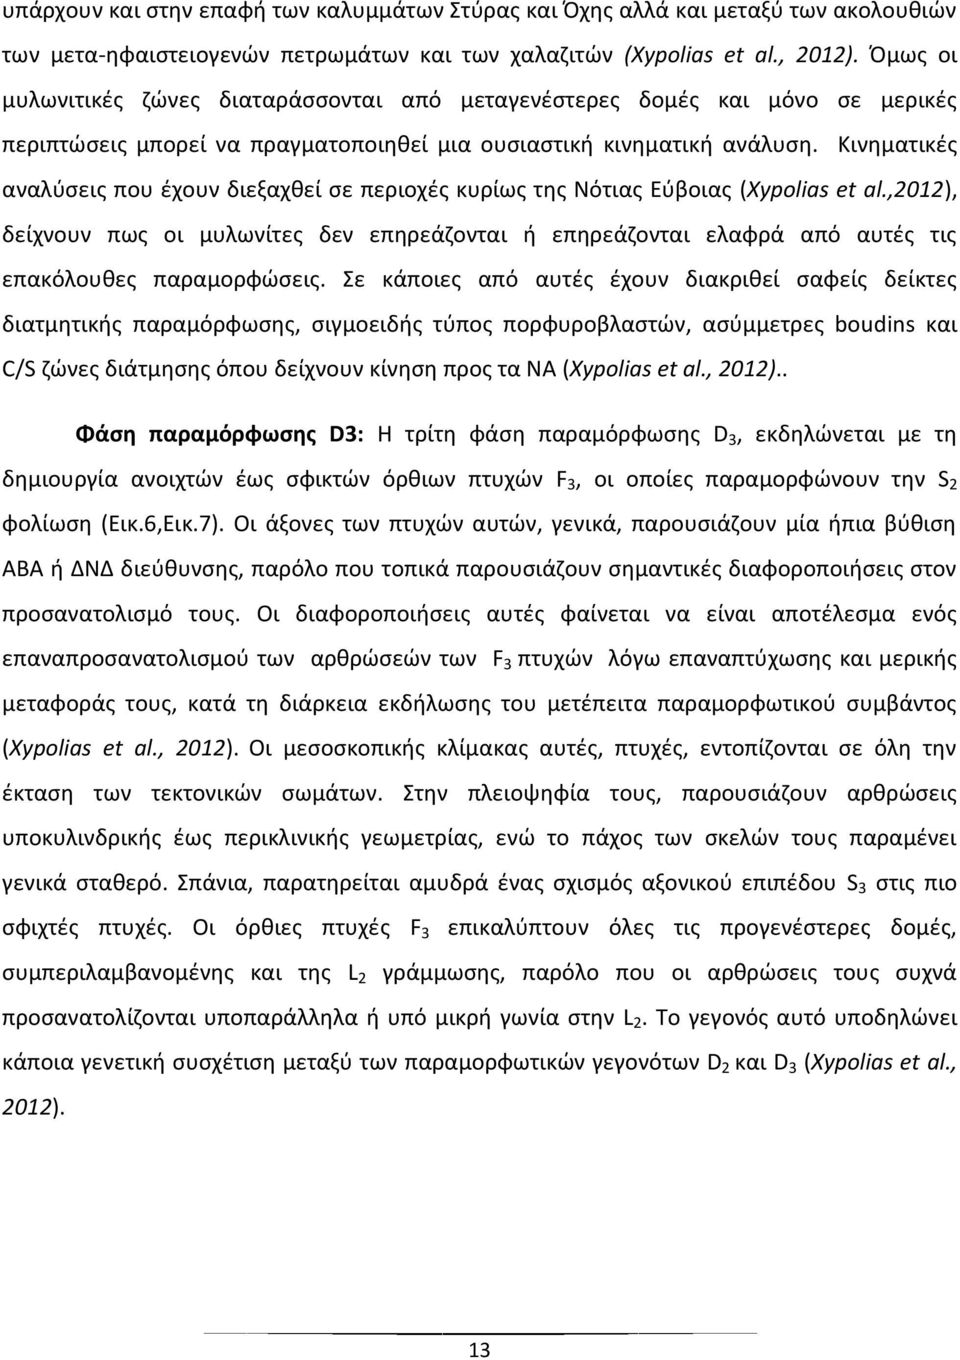 Κινηματικές αναλύσεις που έχουν διεξαχθεί σε περιοχές κυρίως της Νότιας Εύβοιας (Xypolias et al.